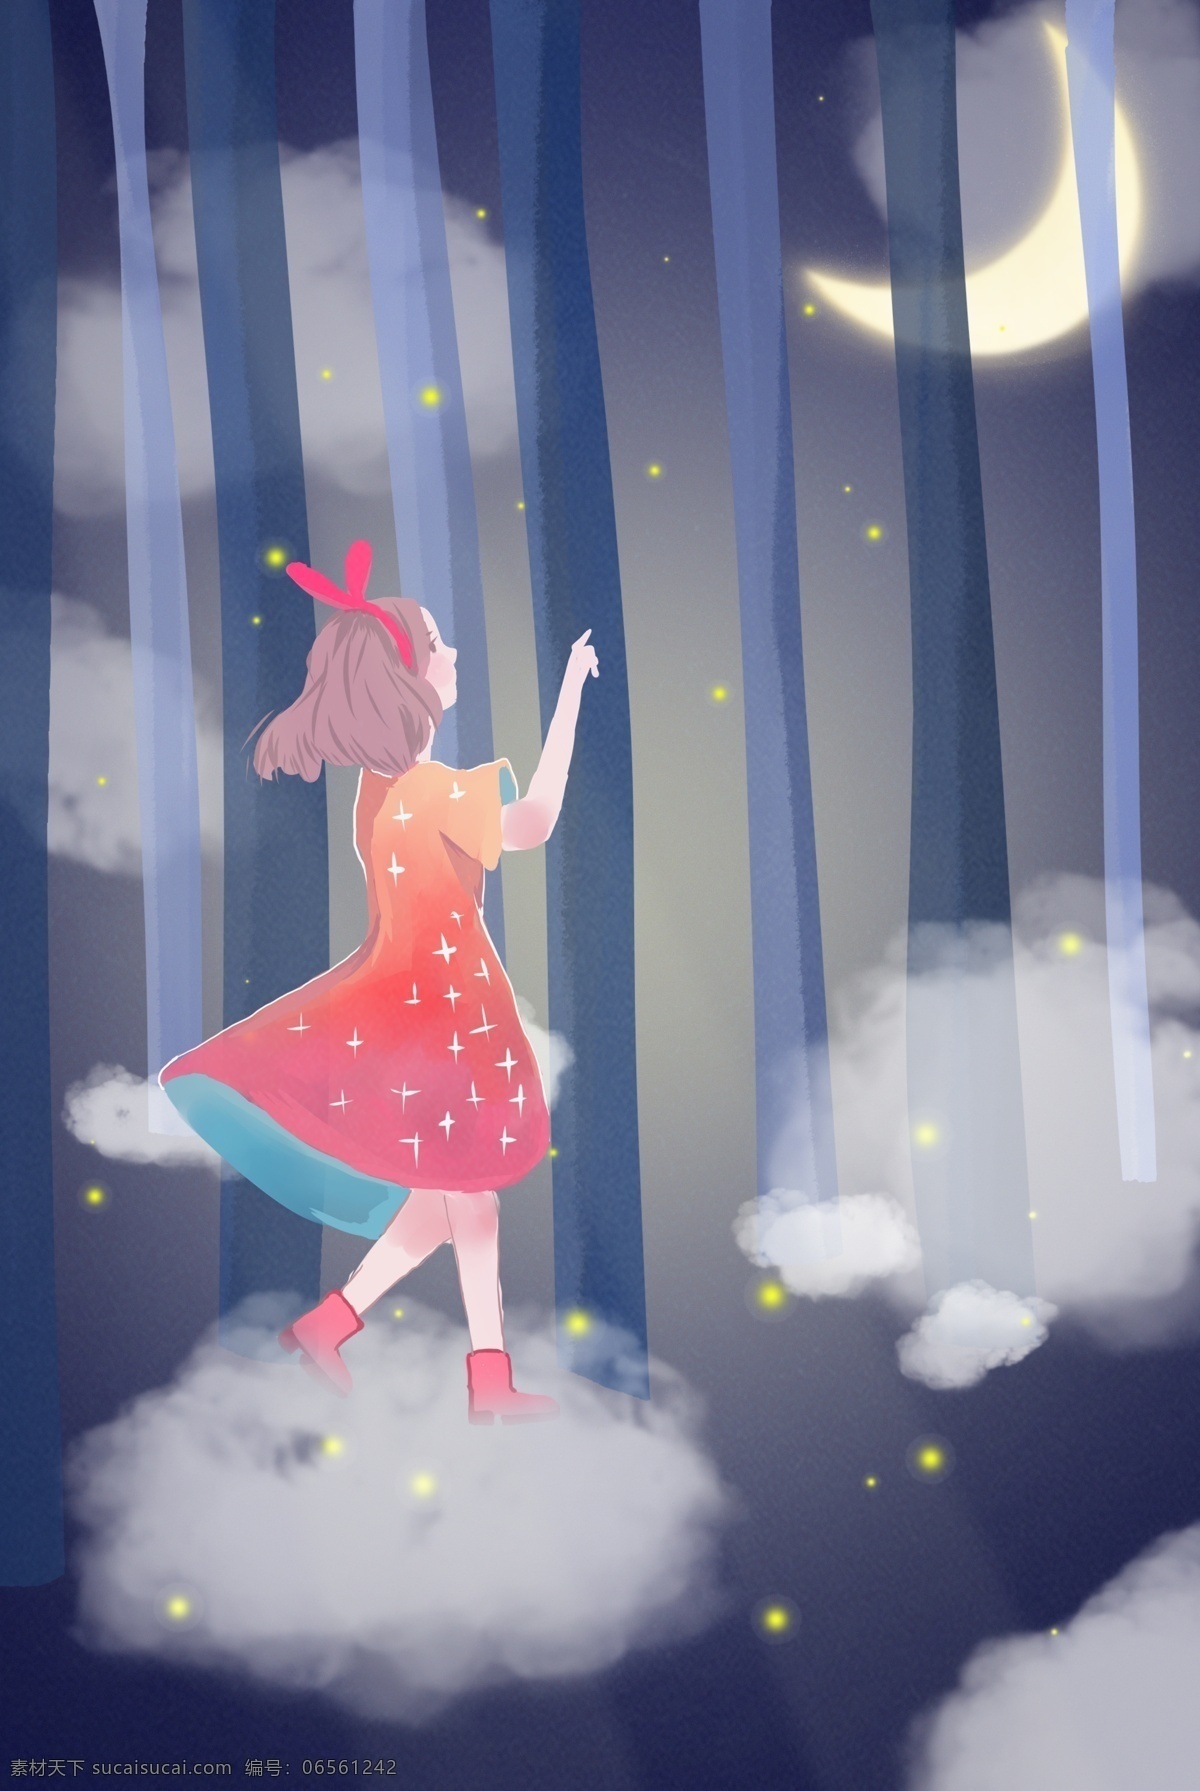 森林 精灵 女孩 背景 海报 树木 夜晚 月亮 梦幻 旅行 探险 促销海报